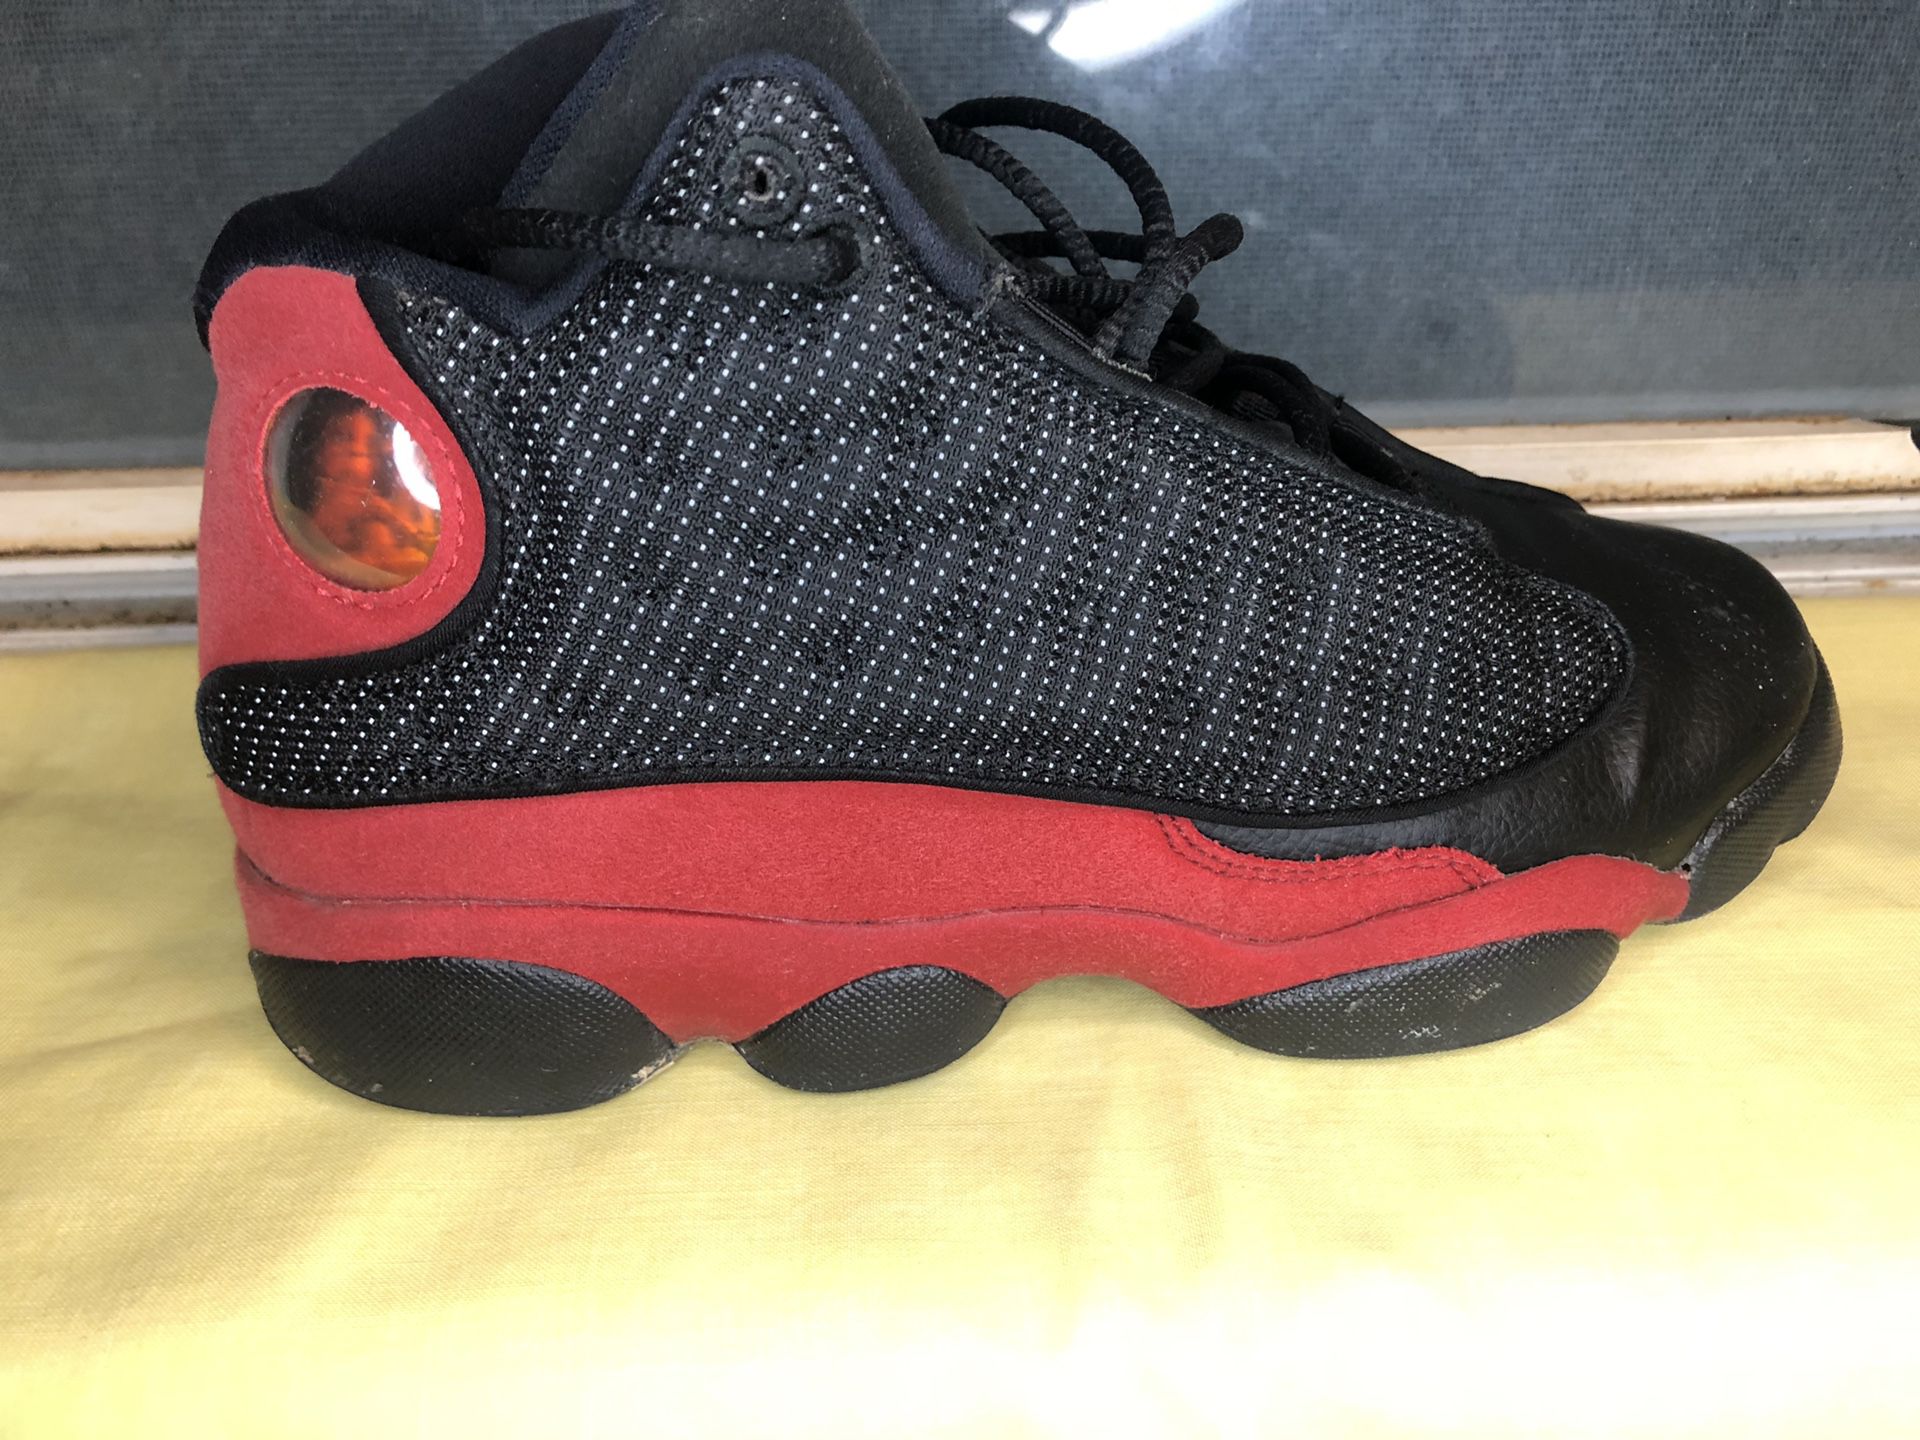 Black and Red Jordan 13s